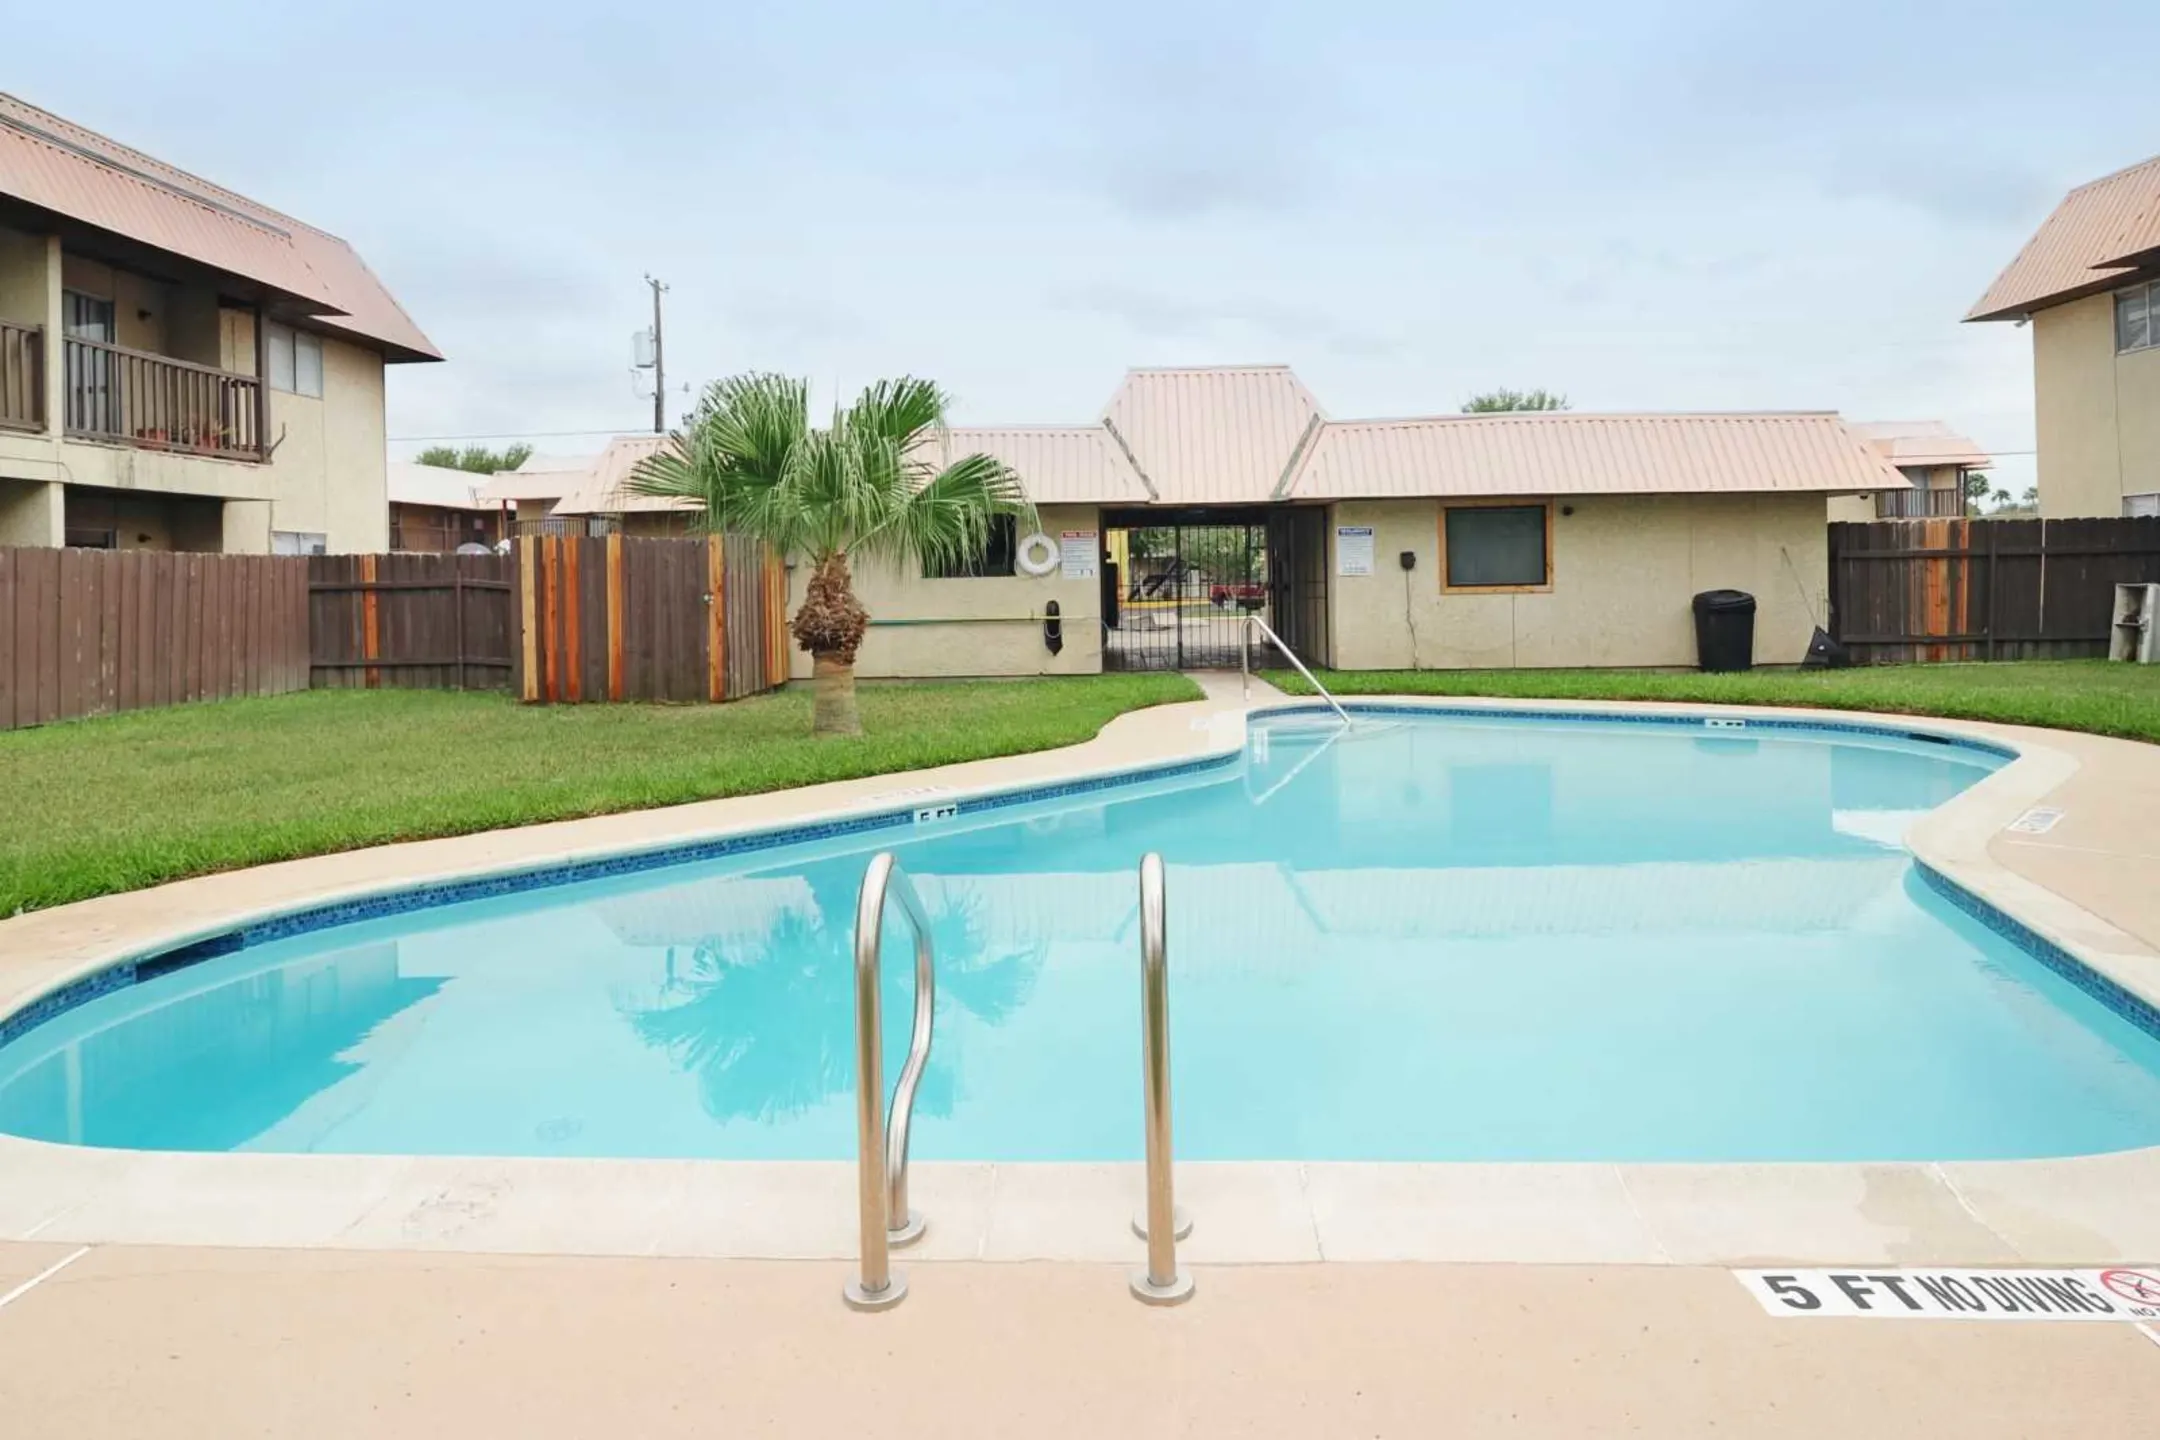 Pool - Crossings Apartments - McAllen, TX